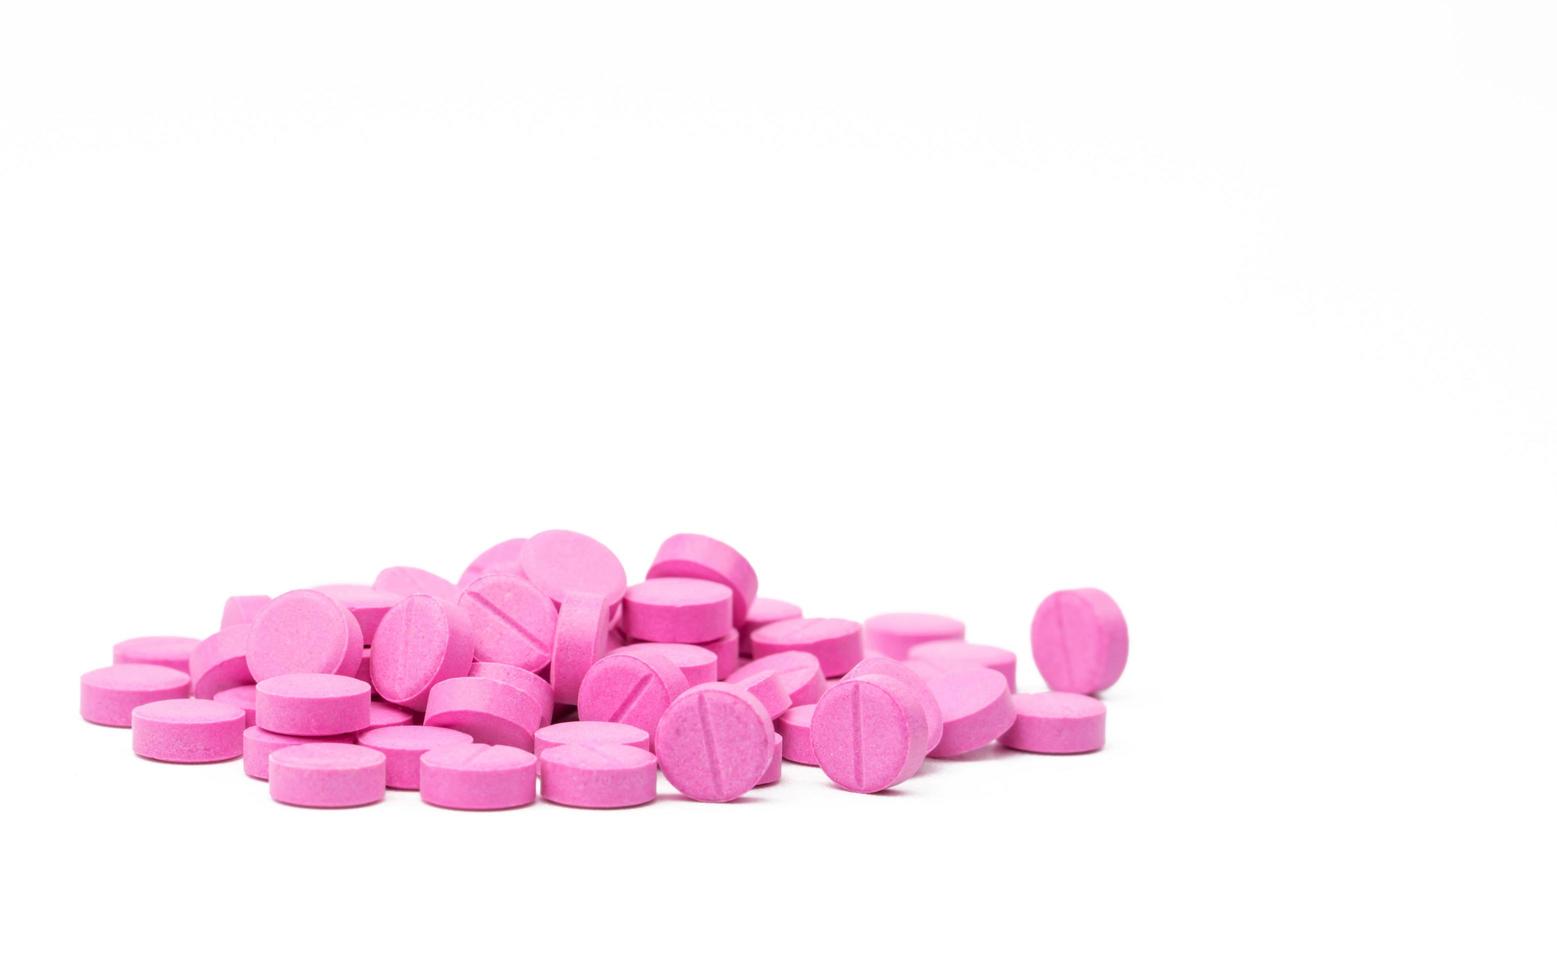 stapel warfarine roze tablet pillen op witte achtergrond. warfarine voor de behandeling van diepe veneuze trombose. antistollingsmiddel. apotheek drogisterij product. farmaceutische industrie. antistolling. foto